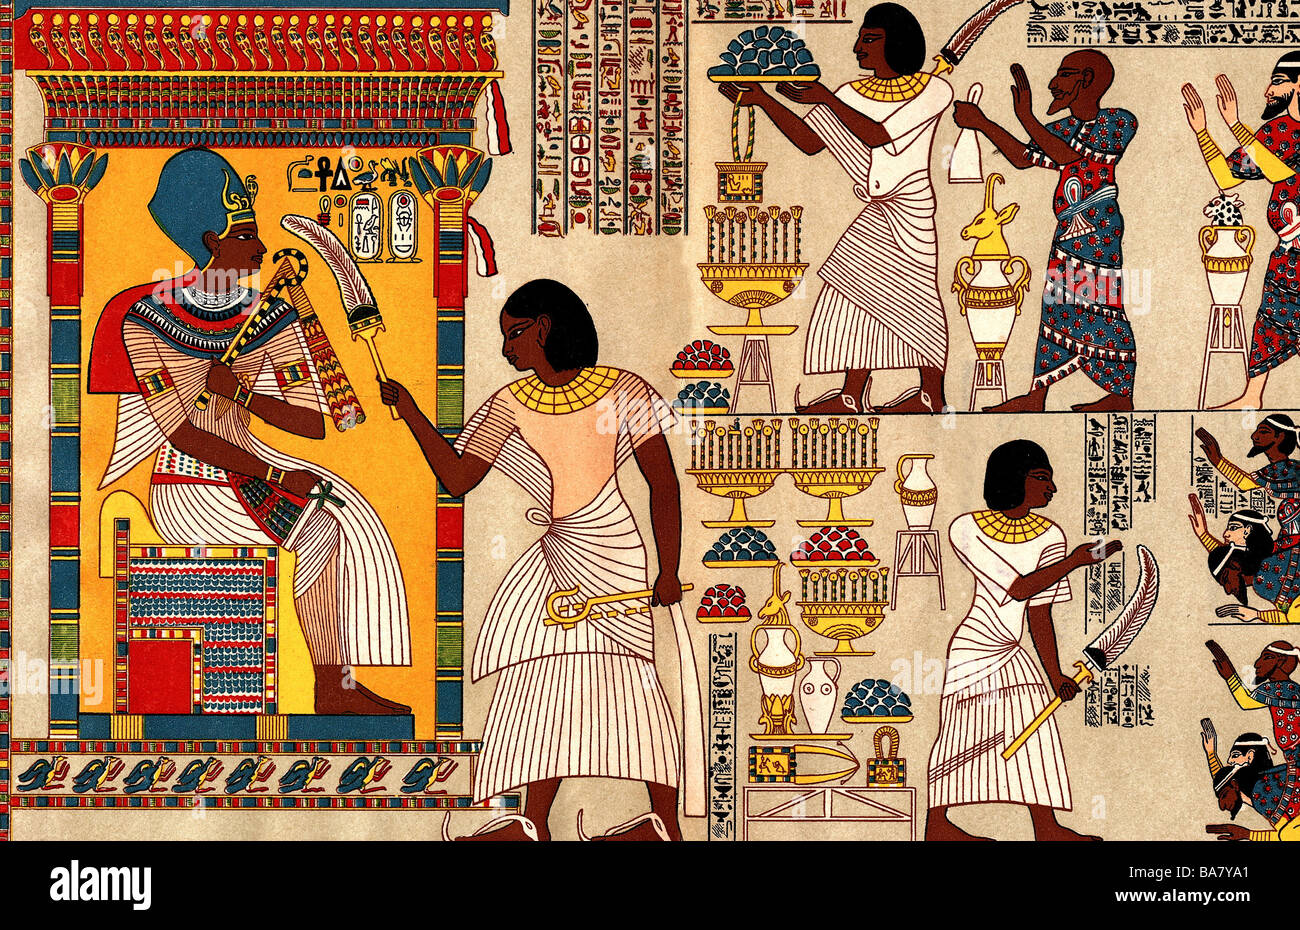 Toutankhamun, roi d'Egypte, 1333 - 1323 av. J.-C., 18ème dynastie, scène, recevant des hommages de Syrie, devant lui l'officiel de l'Etat hui, couleur imprimée, Allemagne, 19ème siècle, après peinture murale de la tombe de hui, Banque D'Images